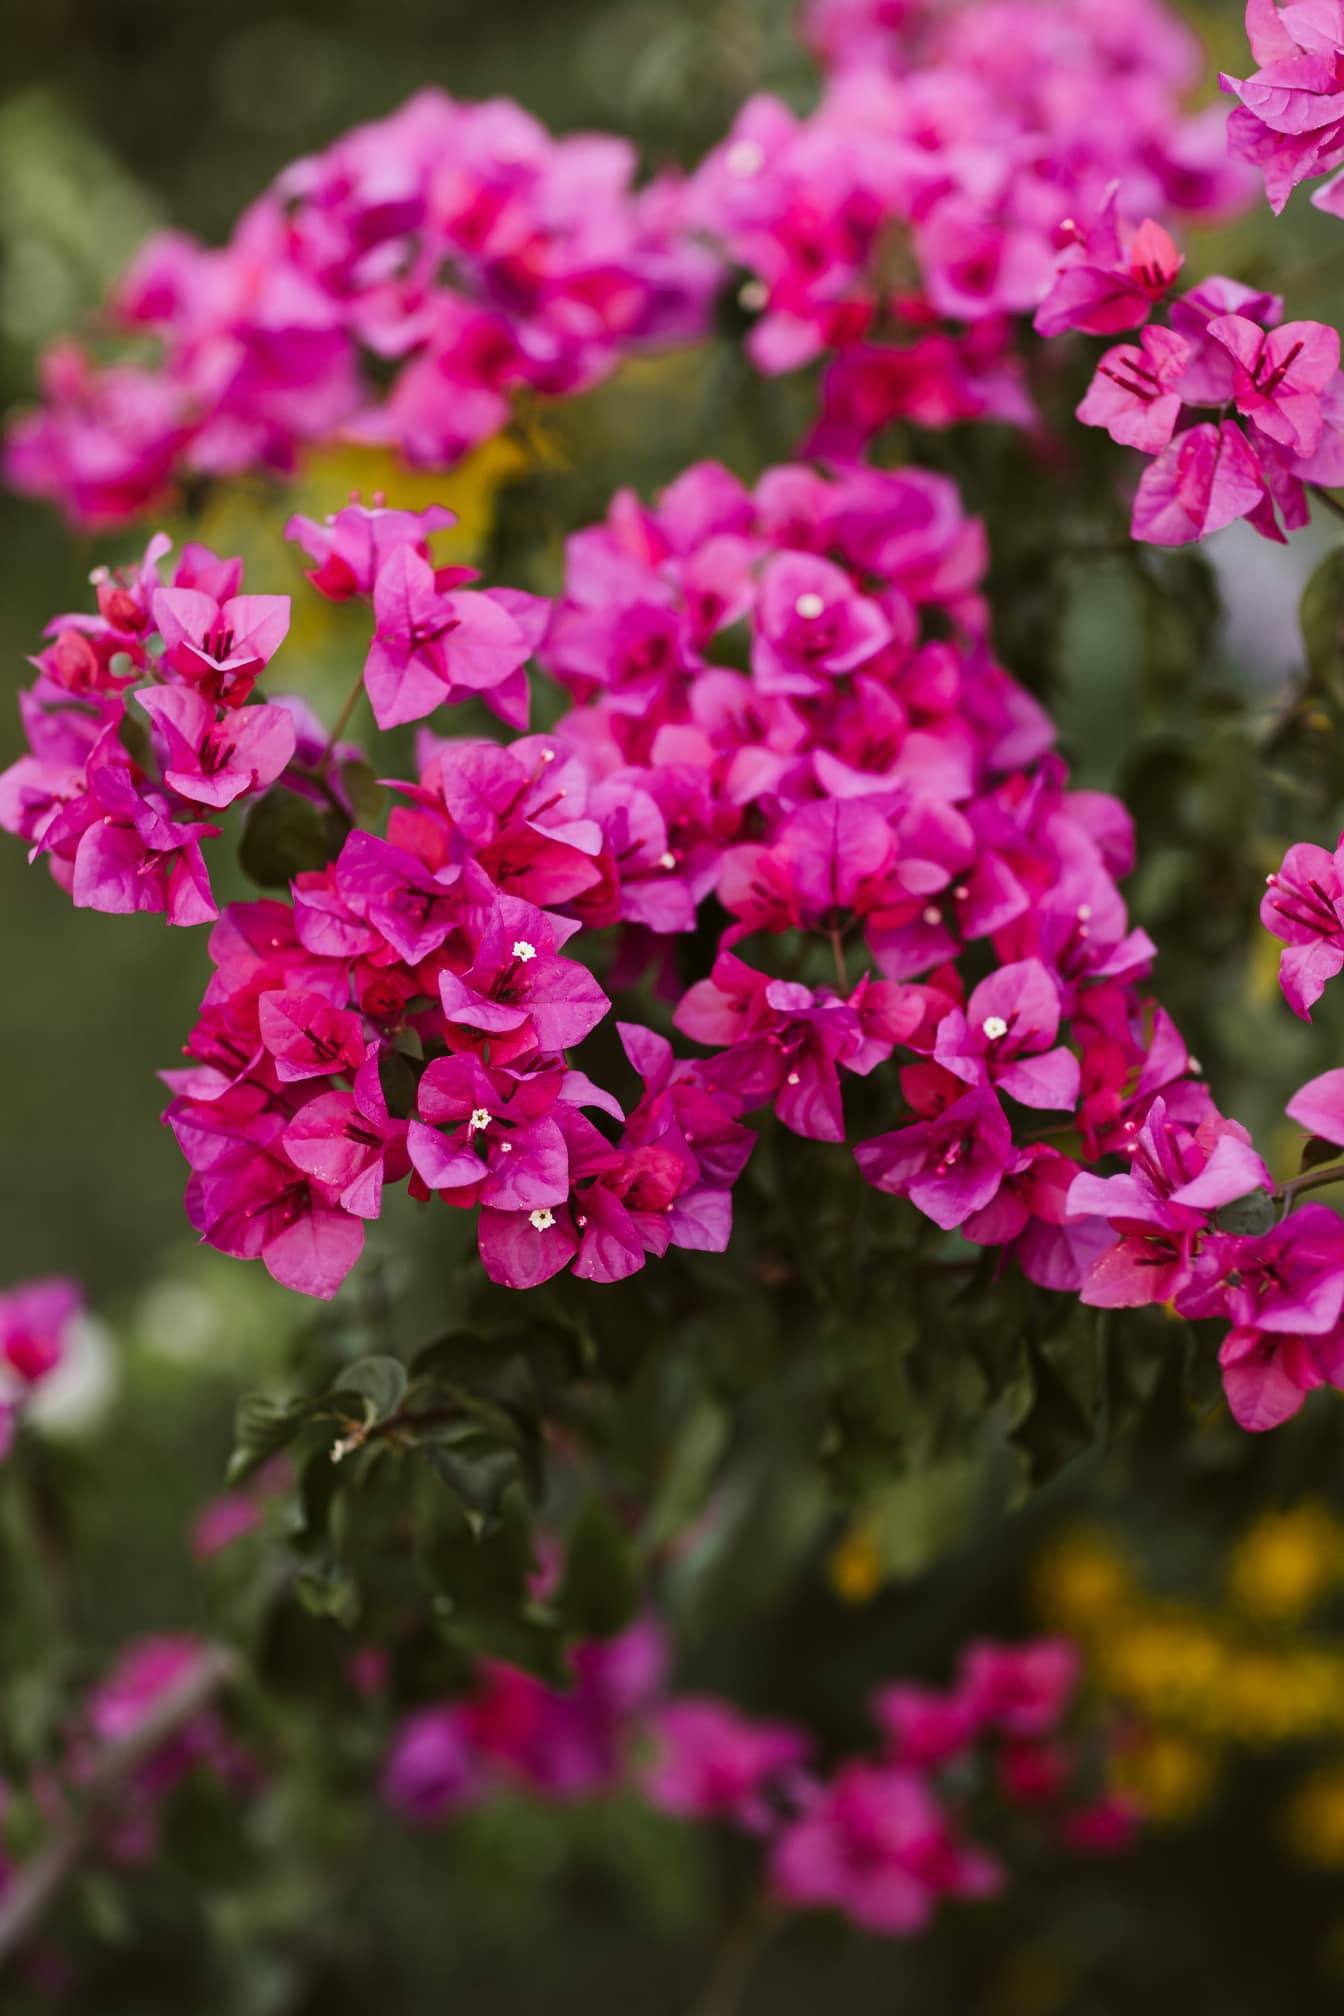 Petit bougainvillier ou fleur de papier (Bougainvillea glabra) buisson de pétales rosâtres